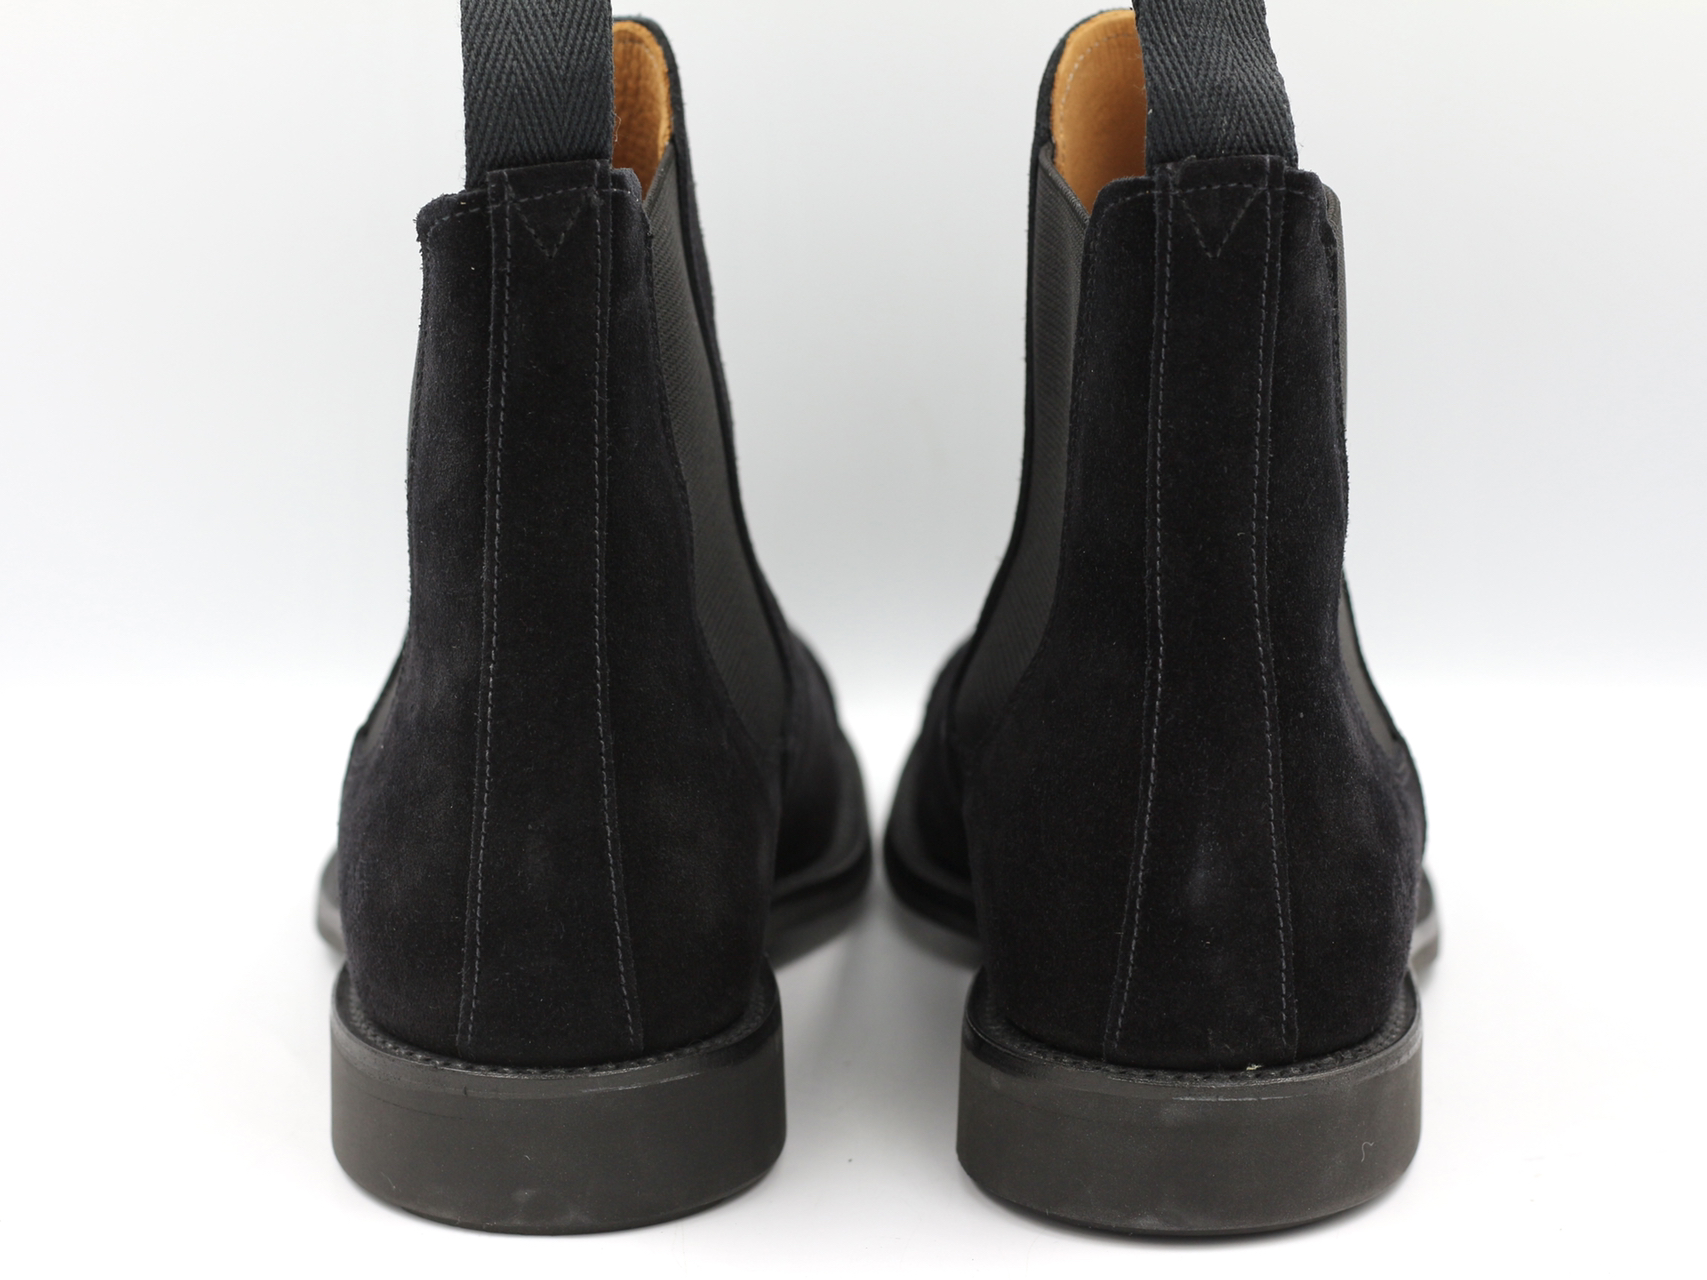 超人気高品質 サンダース SANDERS 26cm 新品未使用品 黒 サイドゴア ブーツ